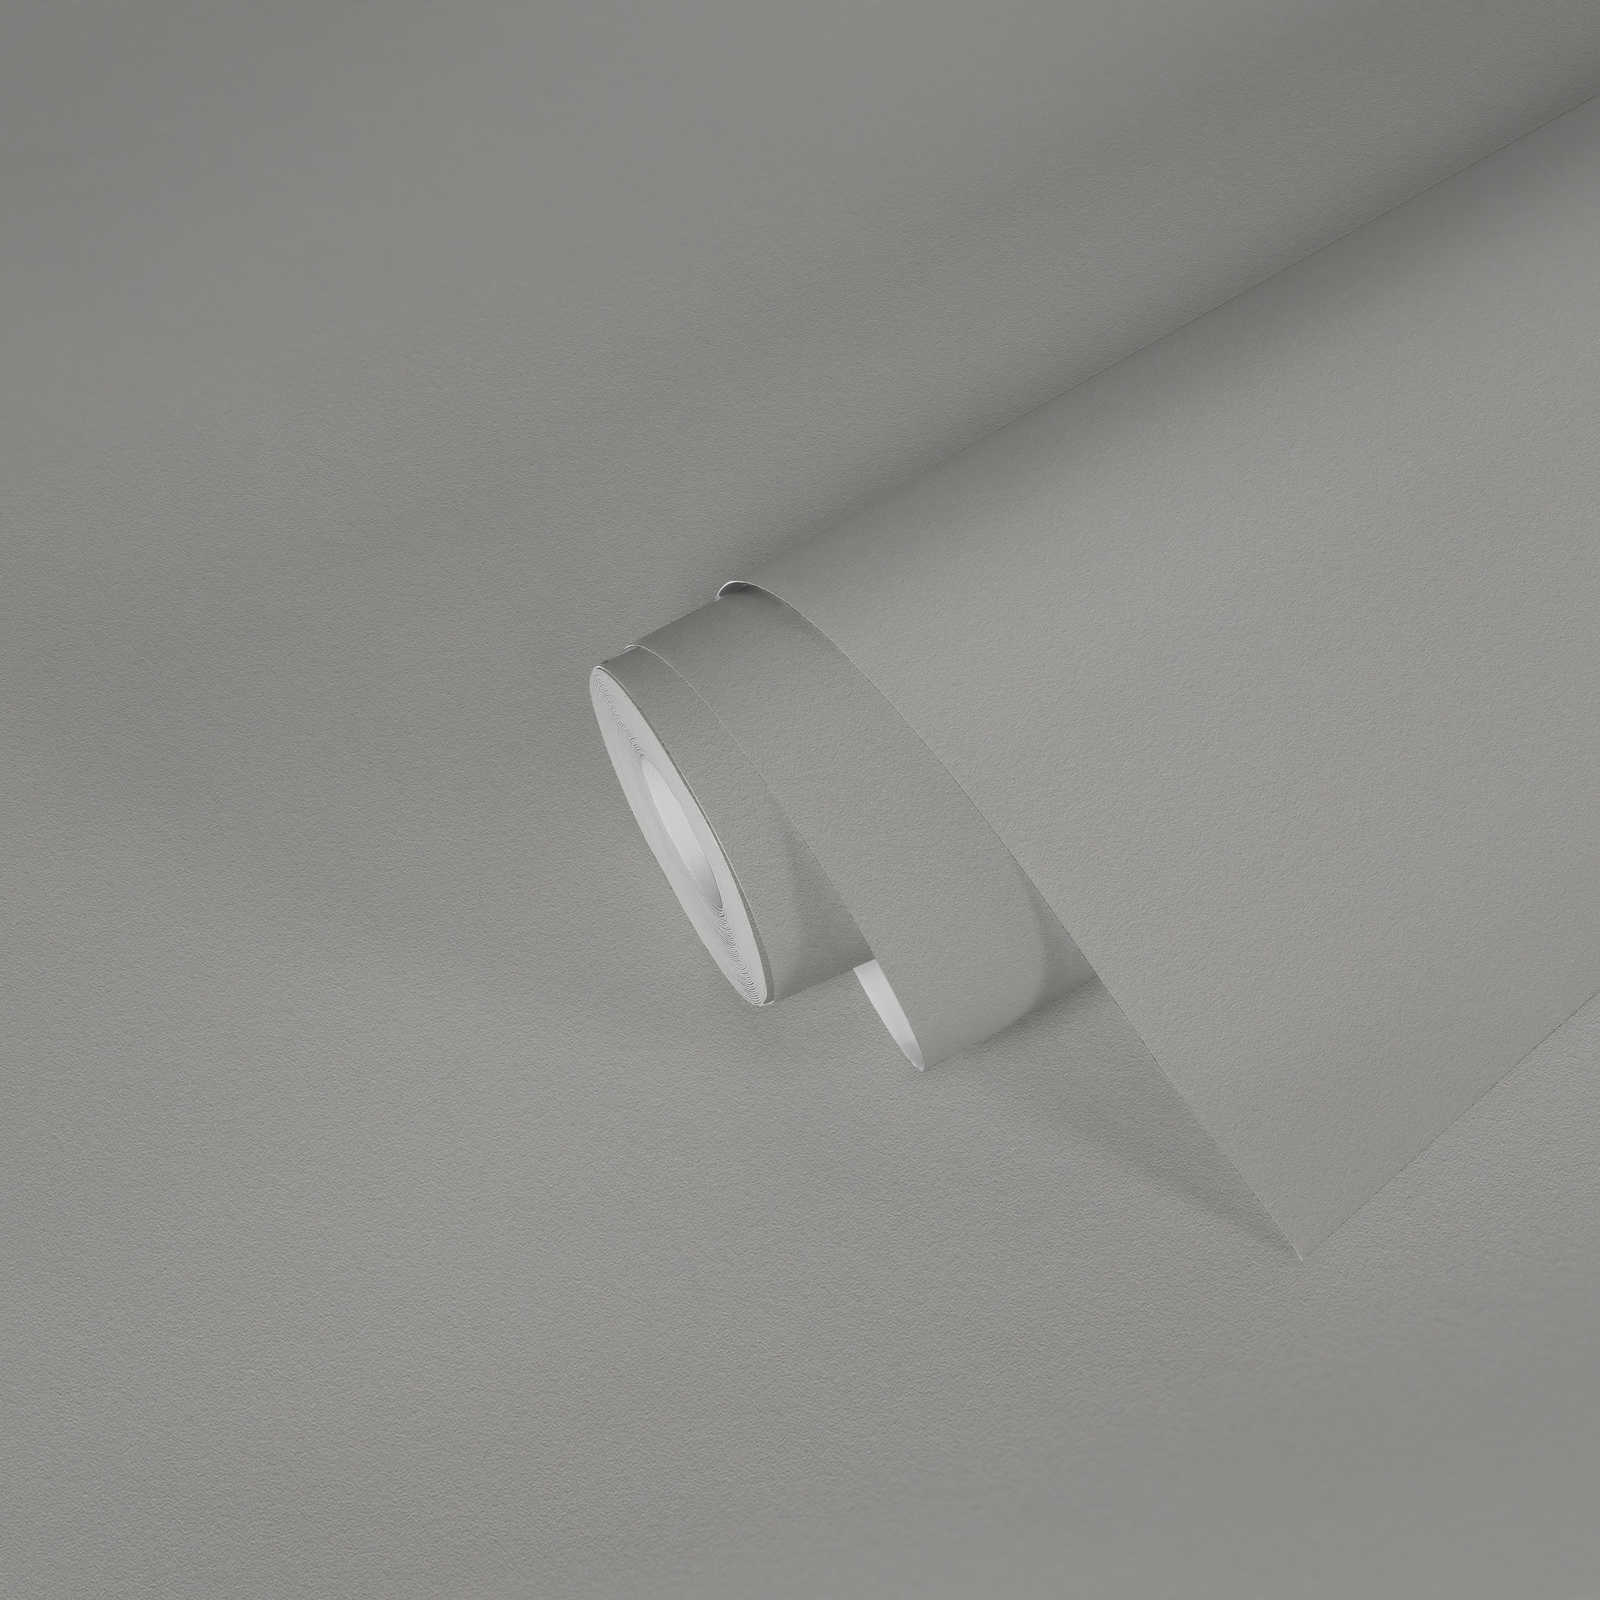             Papier peint gris uni avec texture de surface mate
        